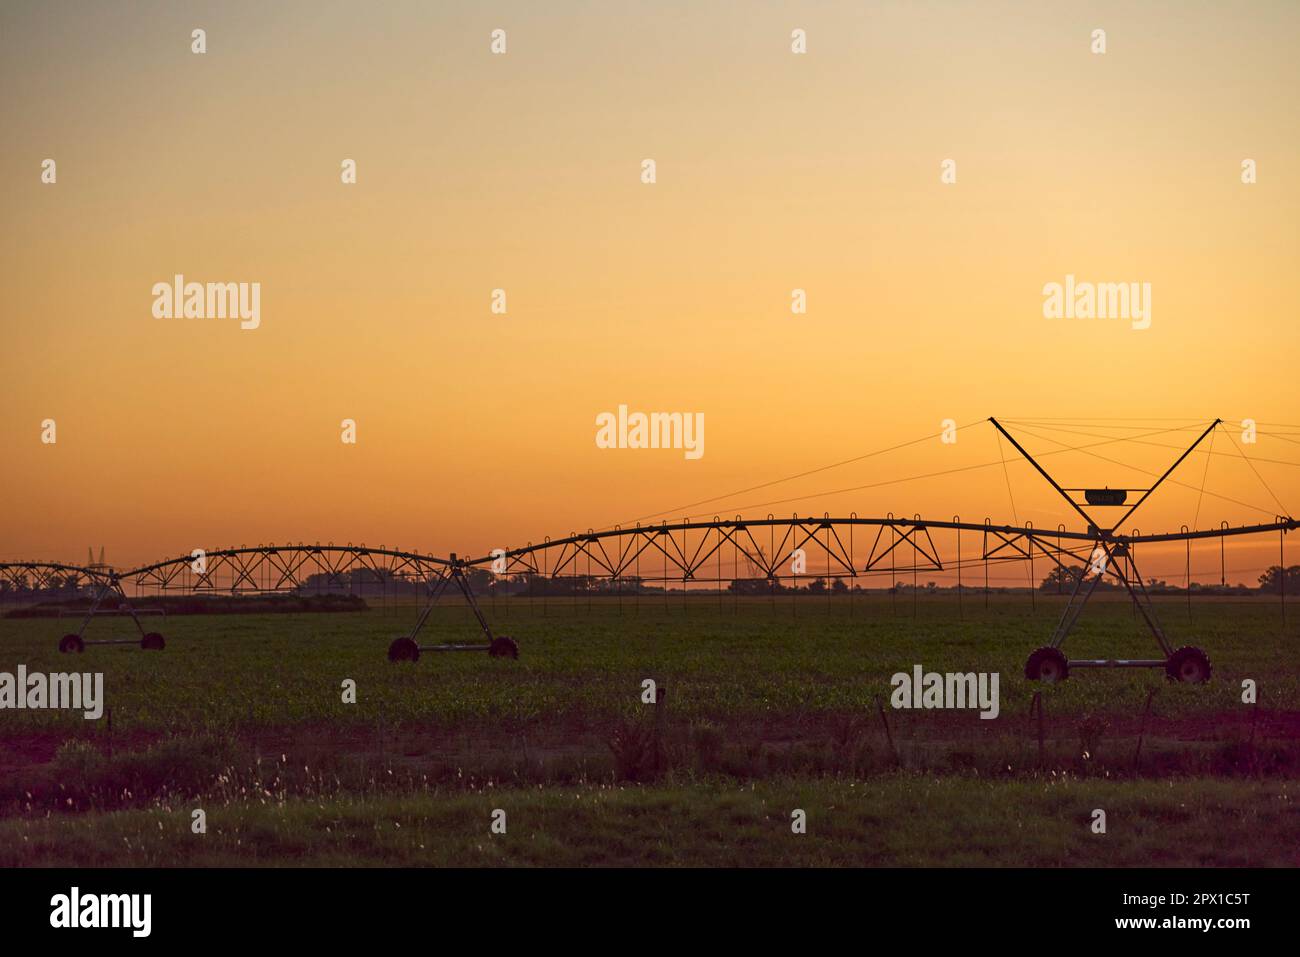 Agricoltura in Argentina: Tramonto in campagna, contro un cielo arancione, la sagoma di un sistema di irrigazione agricola in controluce. Foto Stock